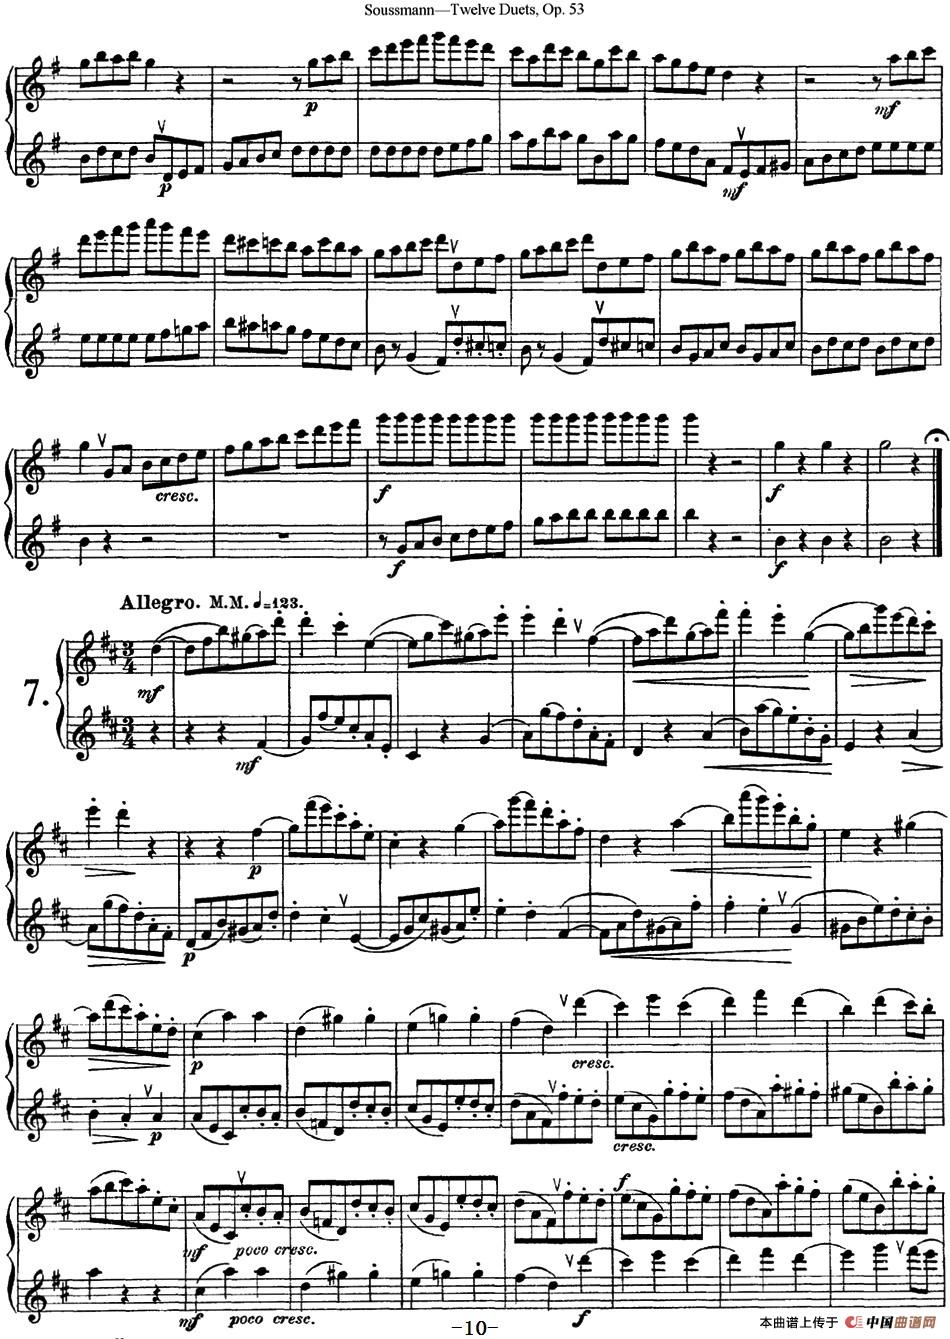 苏斯曼12首长笛重奏曲Op.53（NO.6-NO.7）